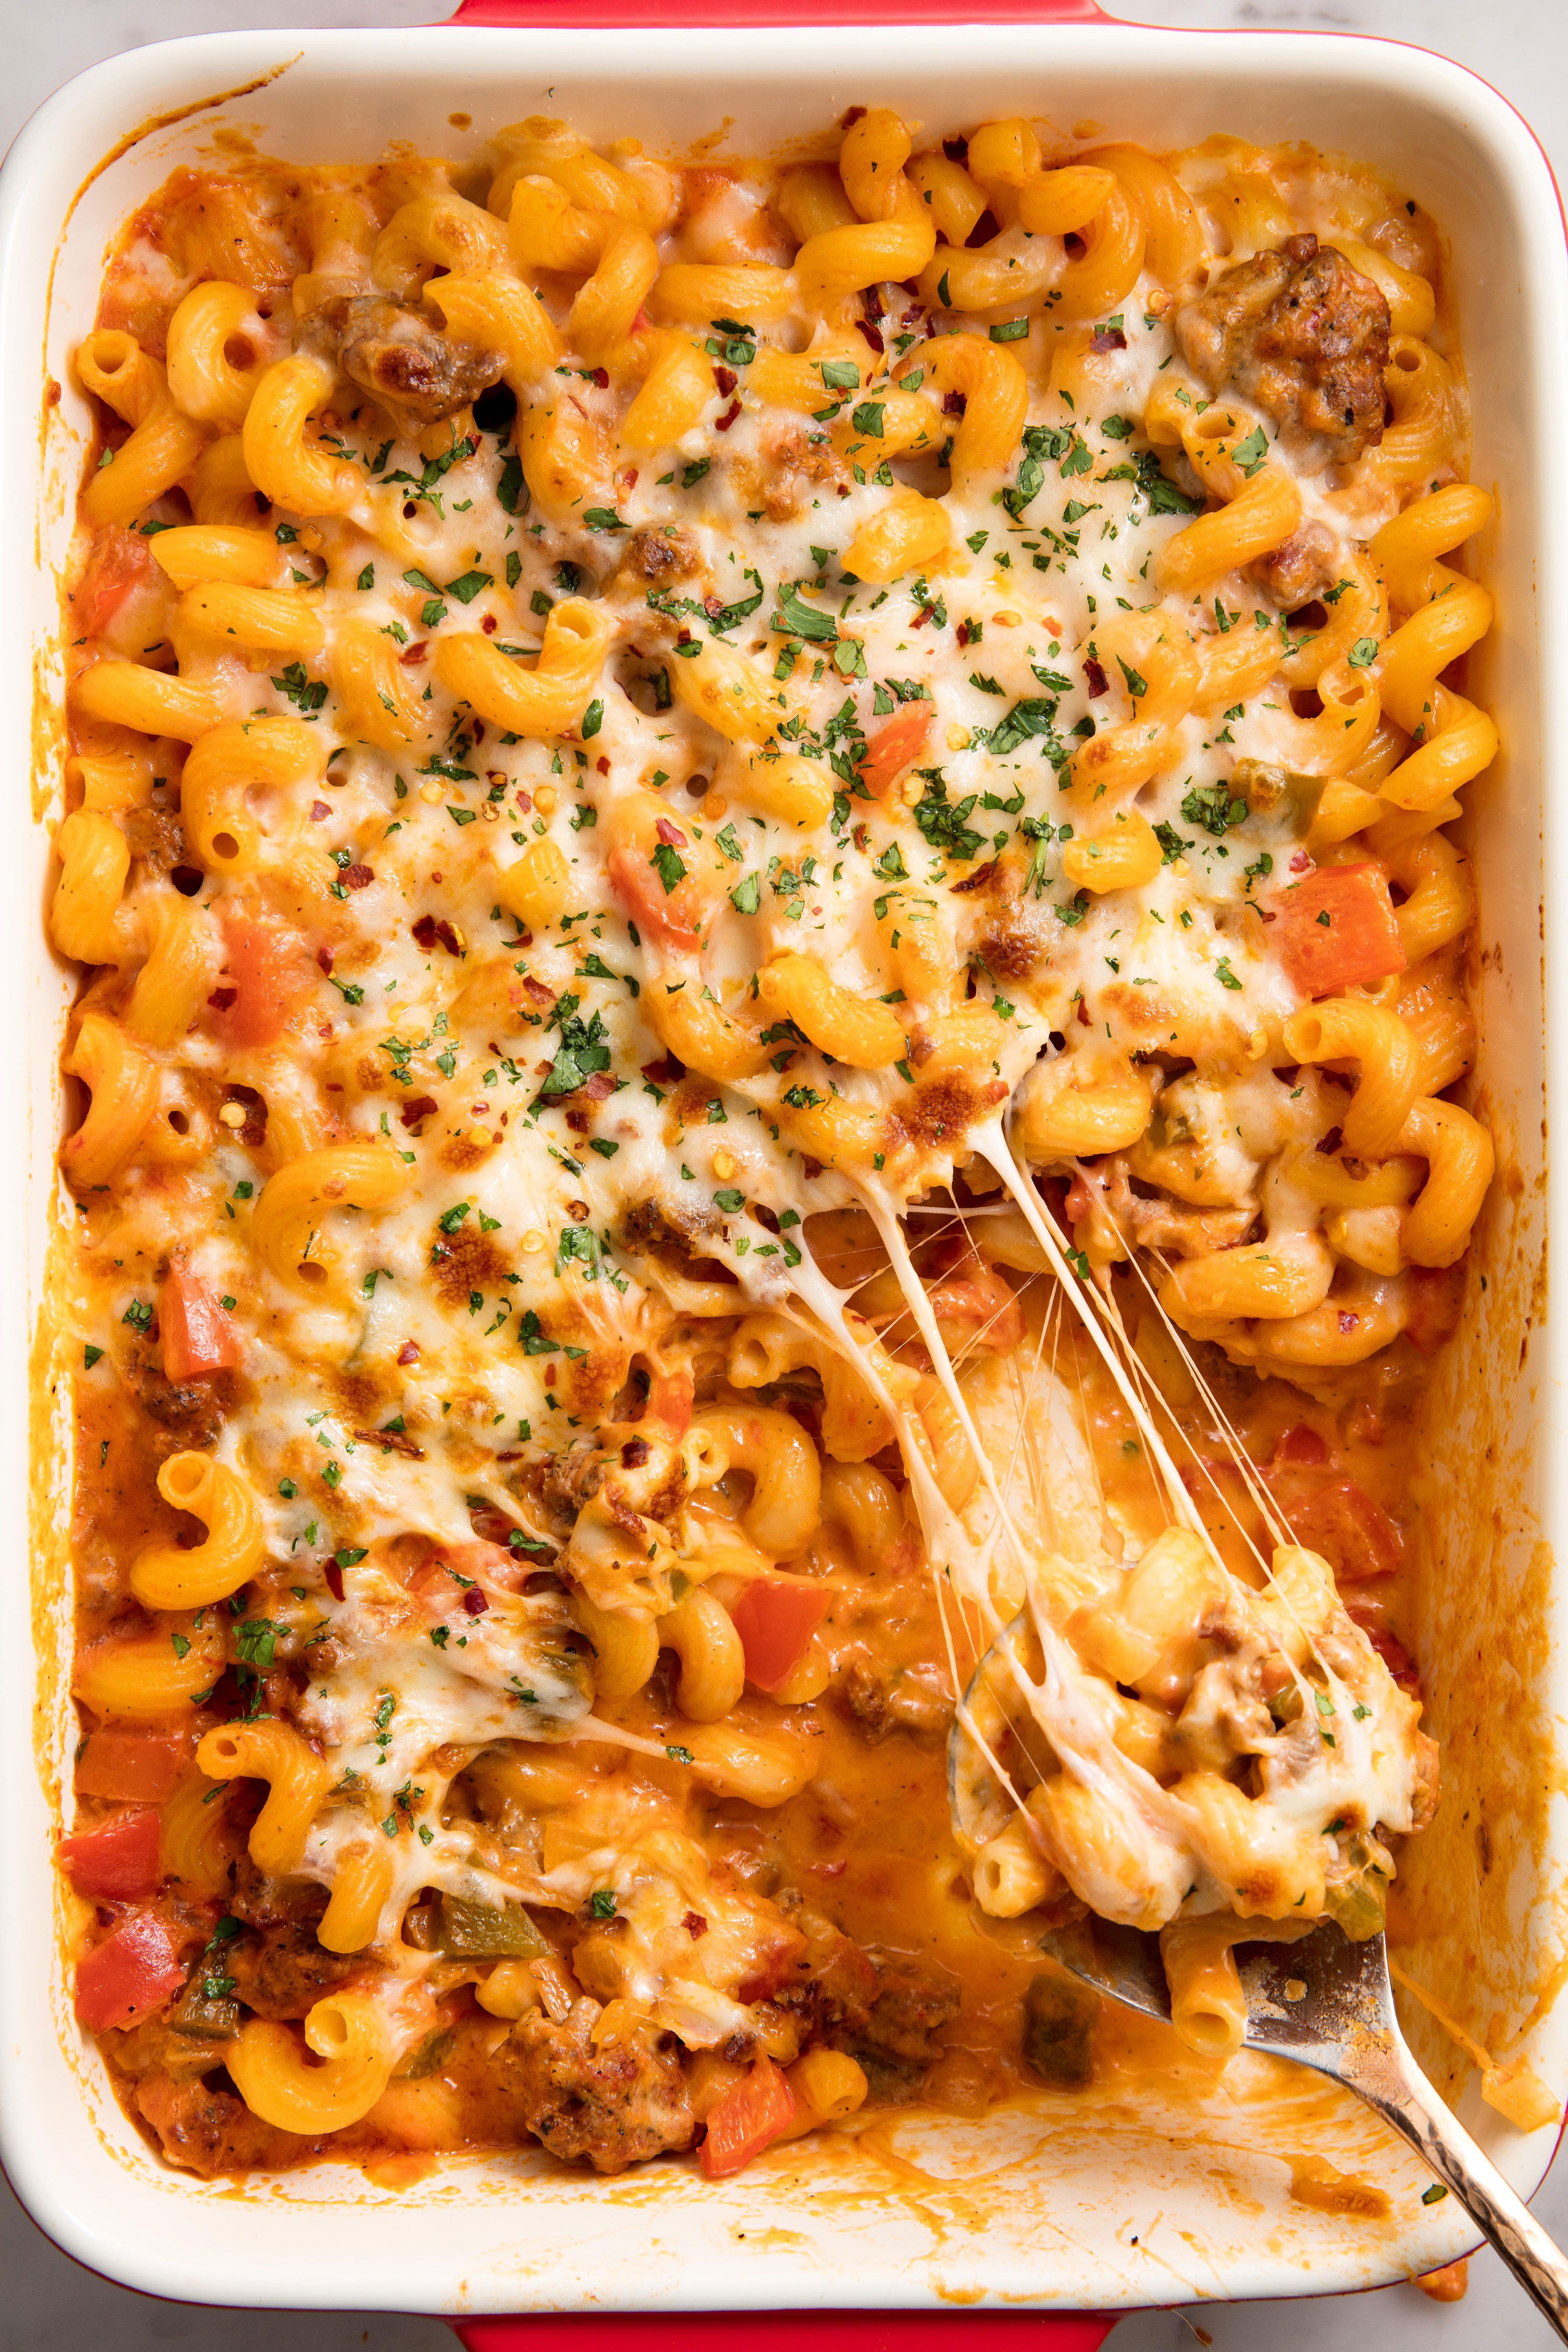 italy-food-names-45-best-italian-pasta-recipes-easy-italian-pasta